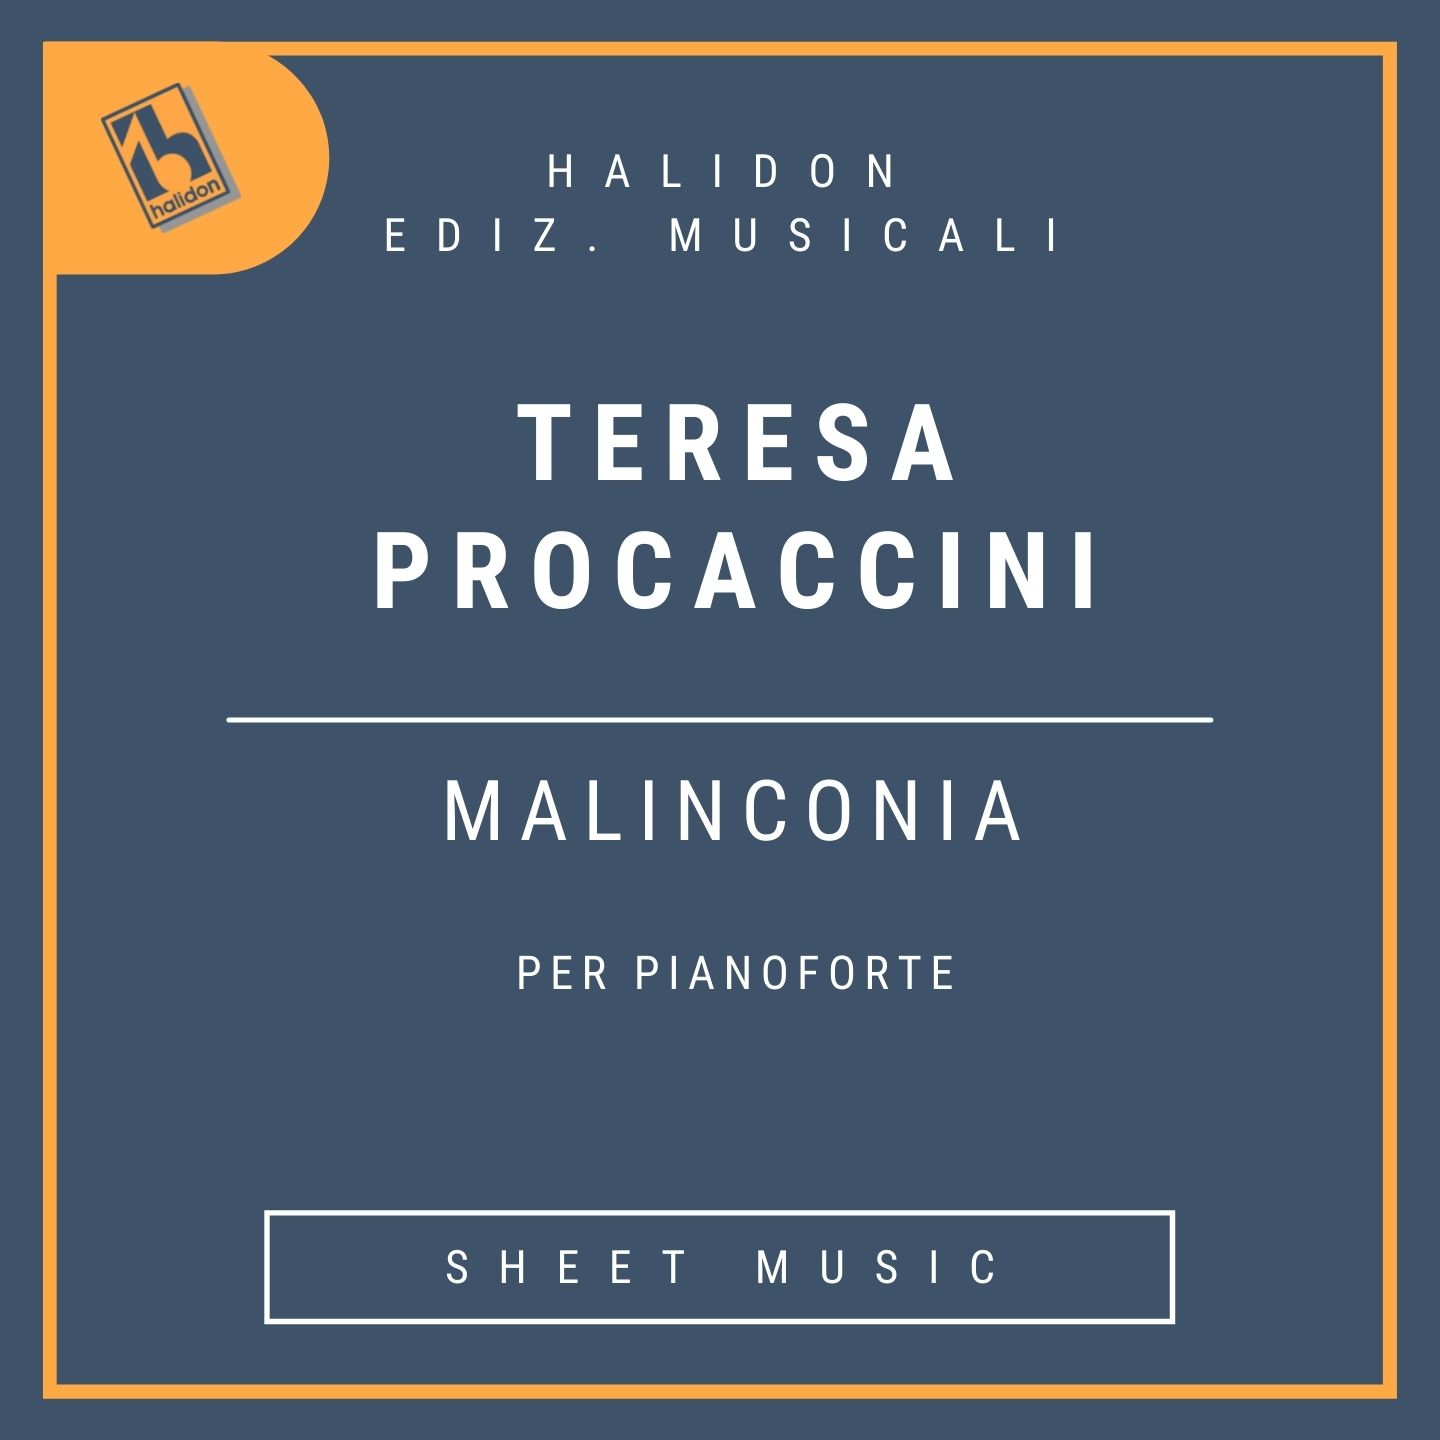 Teresa Procaccini - Malinconia